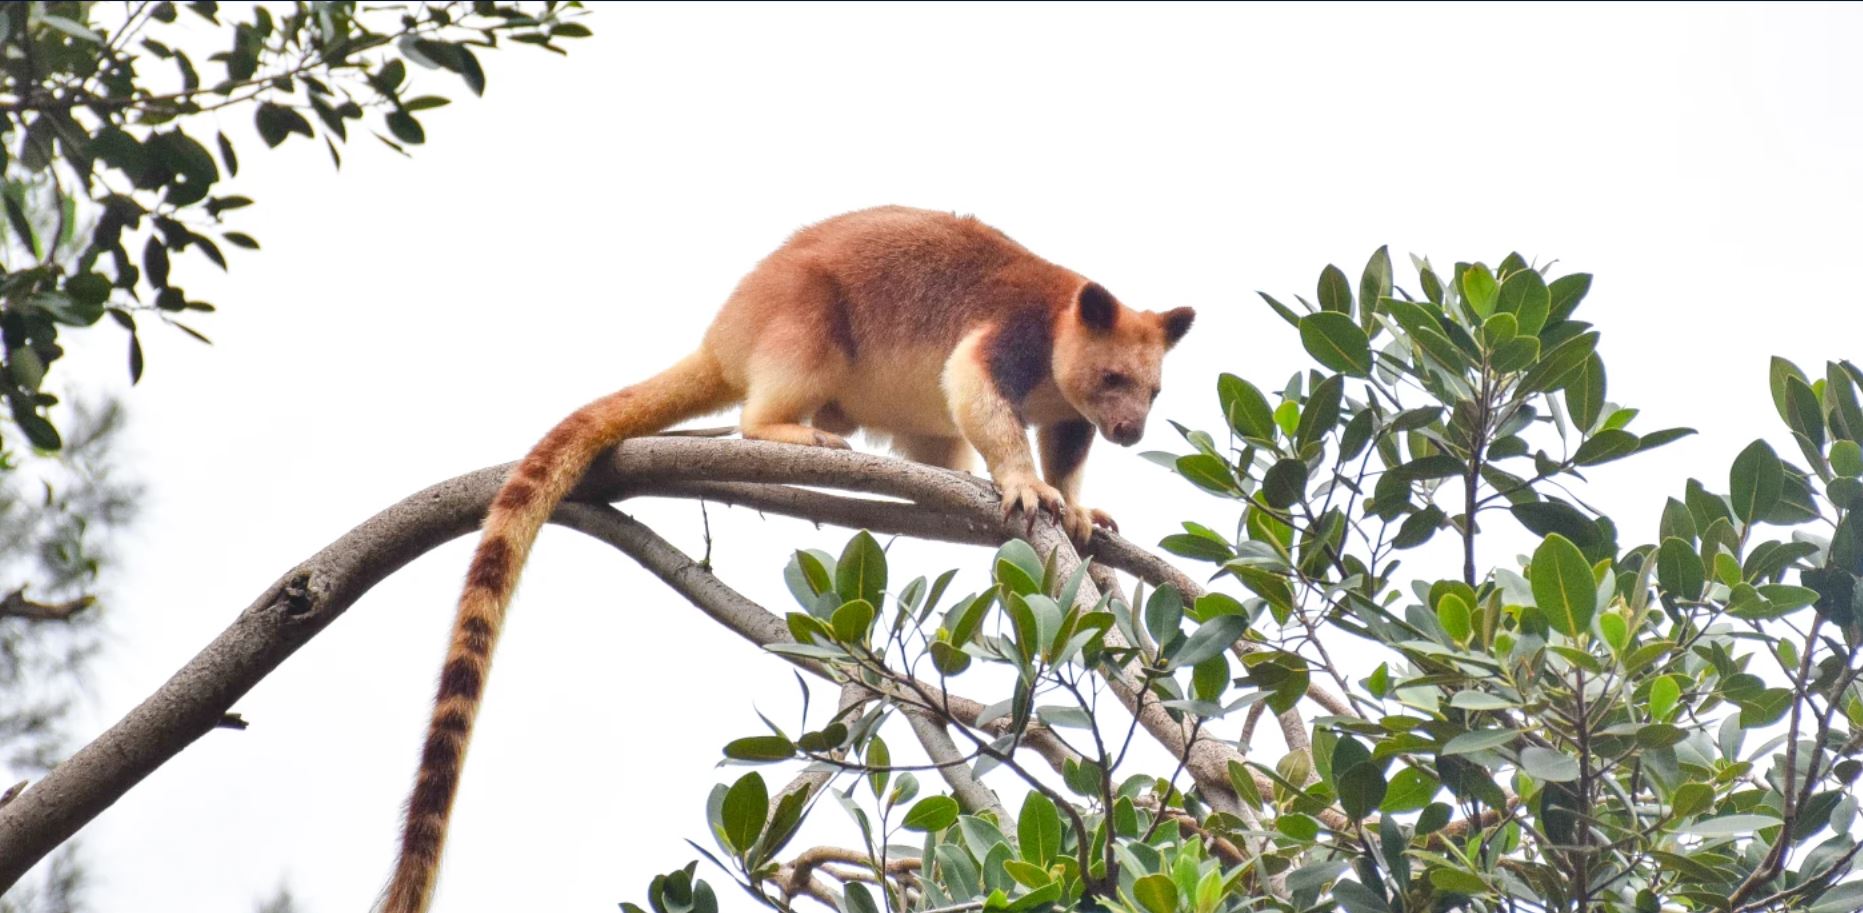 Siblicidal kookaburras, truffle-snuffling potoroos: Why did Australia’s wildlife astonish even Charles Darwin?